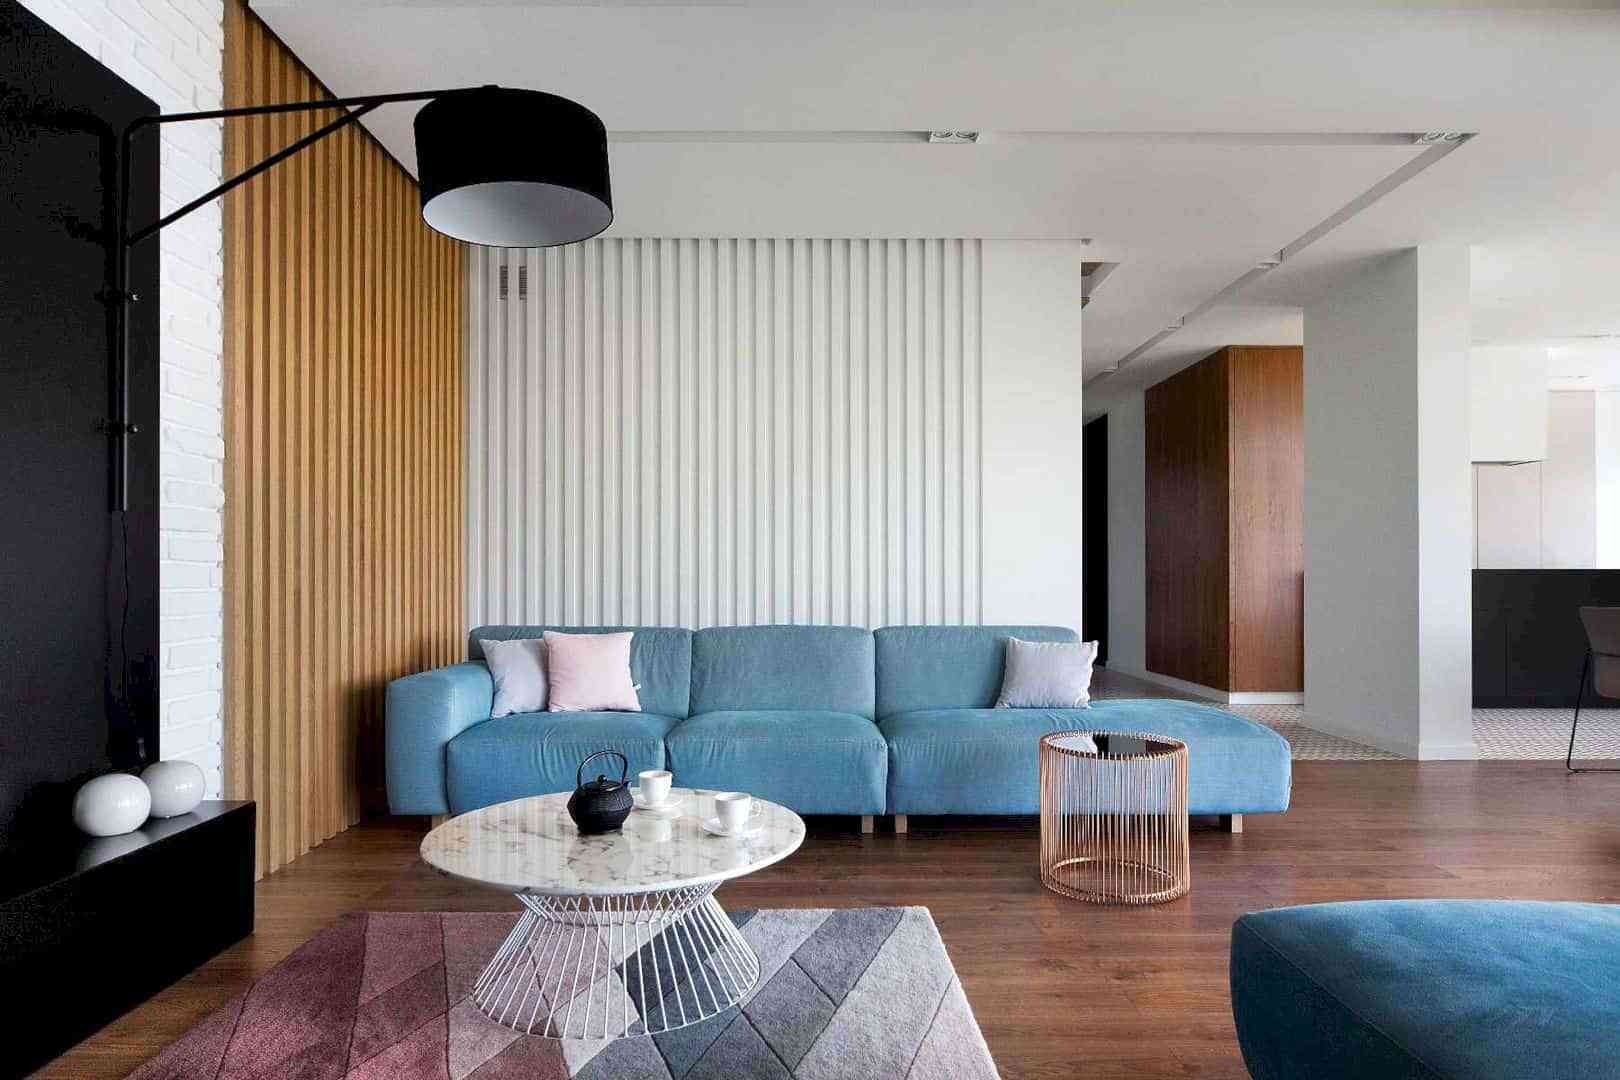 53 Ide Cantik Interior Rumah Minimalis Modern Paling Populer di Dunia